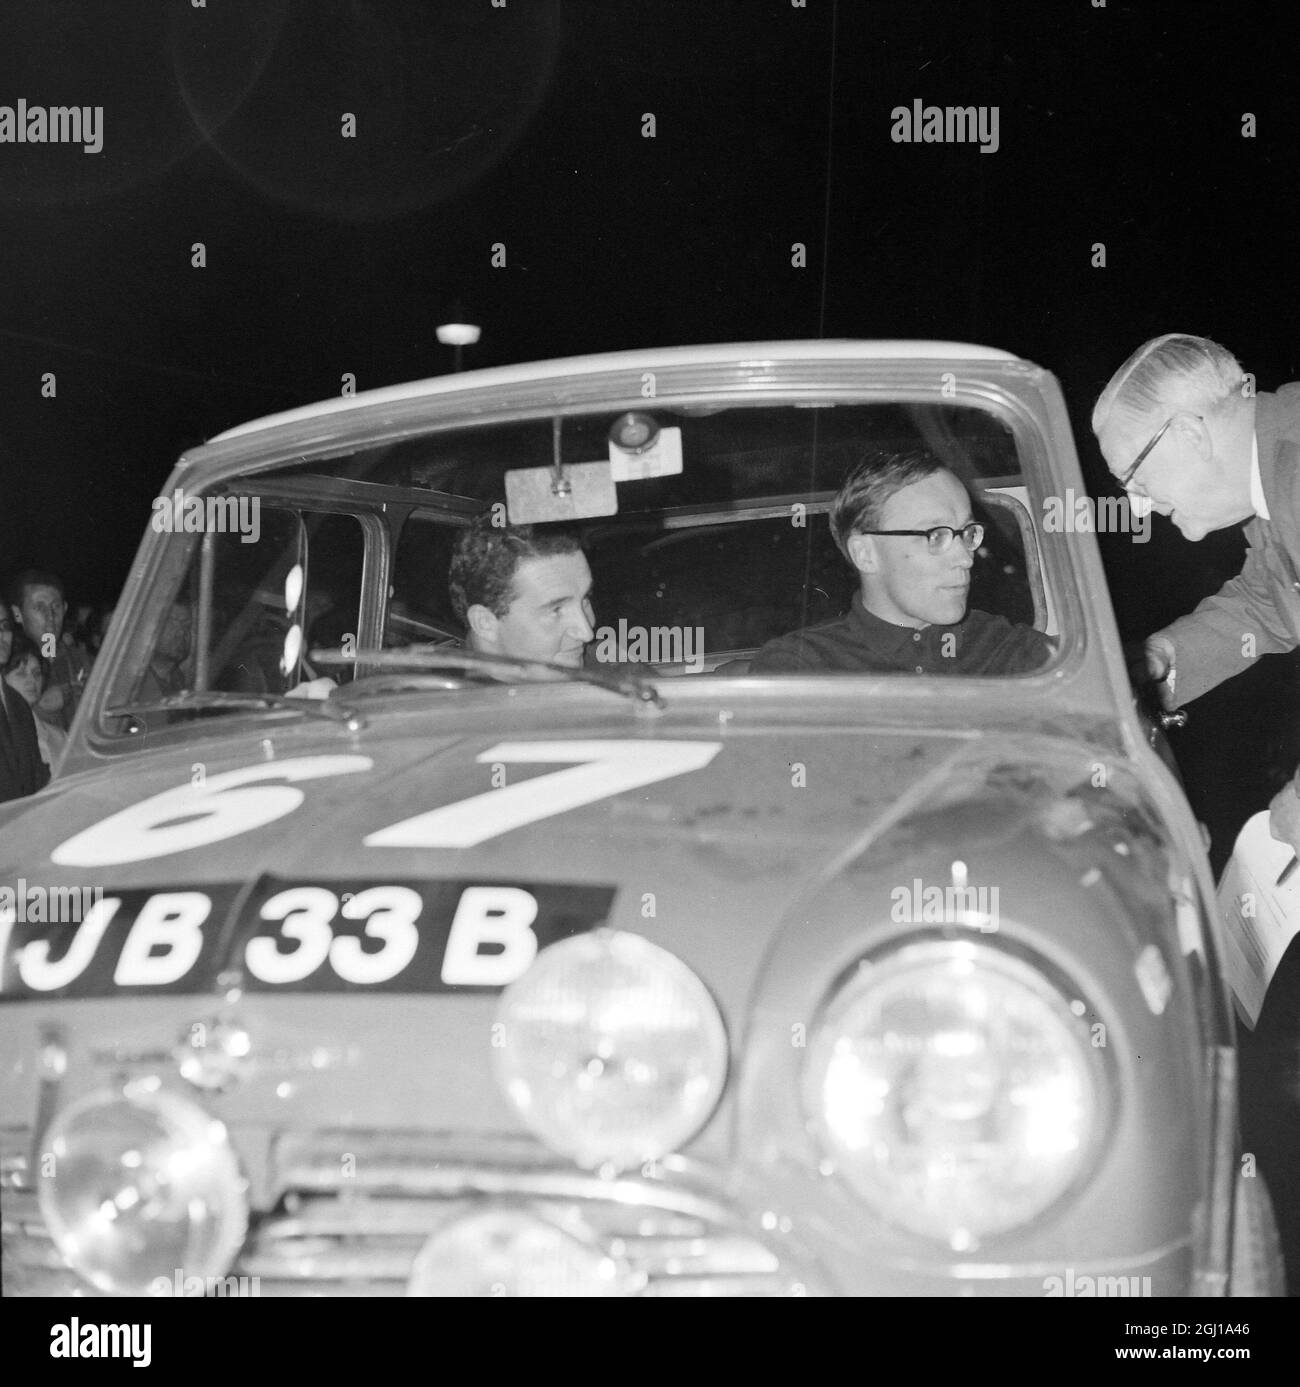 RALLYE AUTOMOBILE COURSE ACROPOLIS EN GRÈCE - PADDY HOPKIRK AVEC LE CO-PILOTE HENRY LIDDON - ; 15 MAI 1964 Banque D'Images